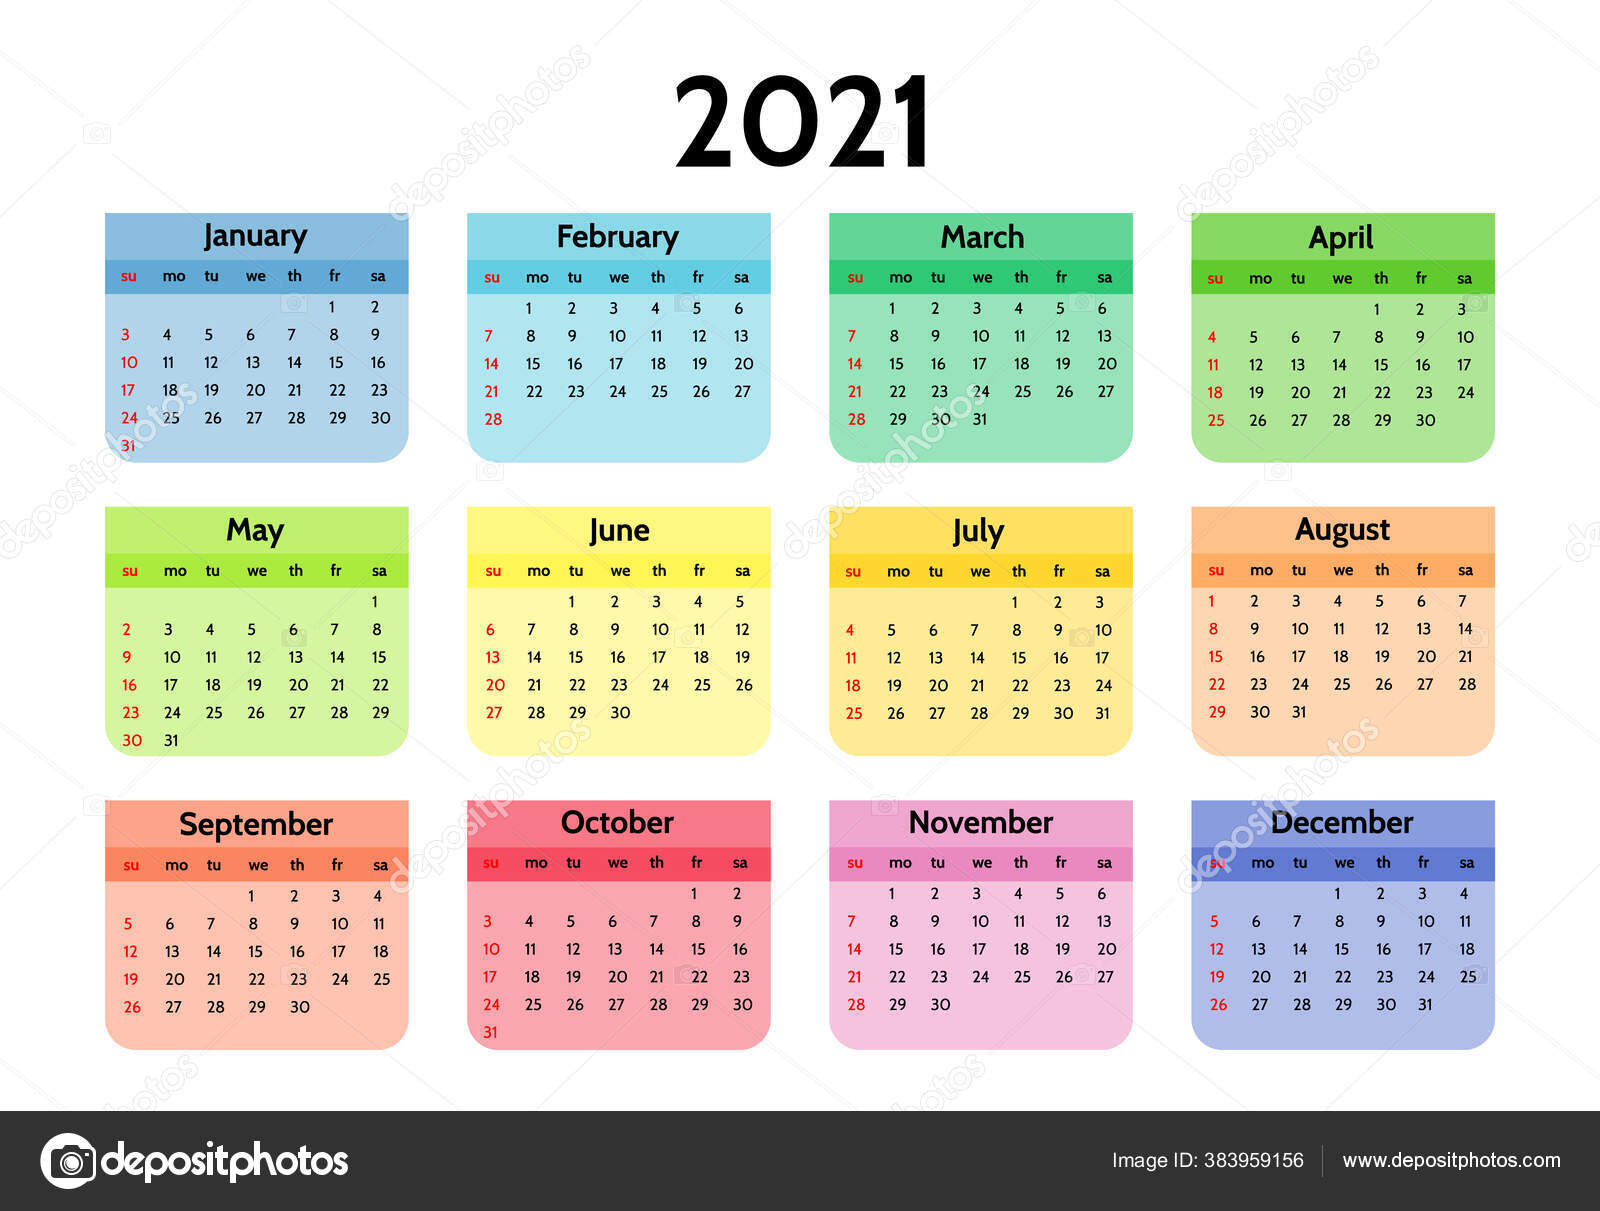 Поздравление Календарь 2021